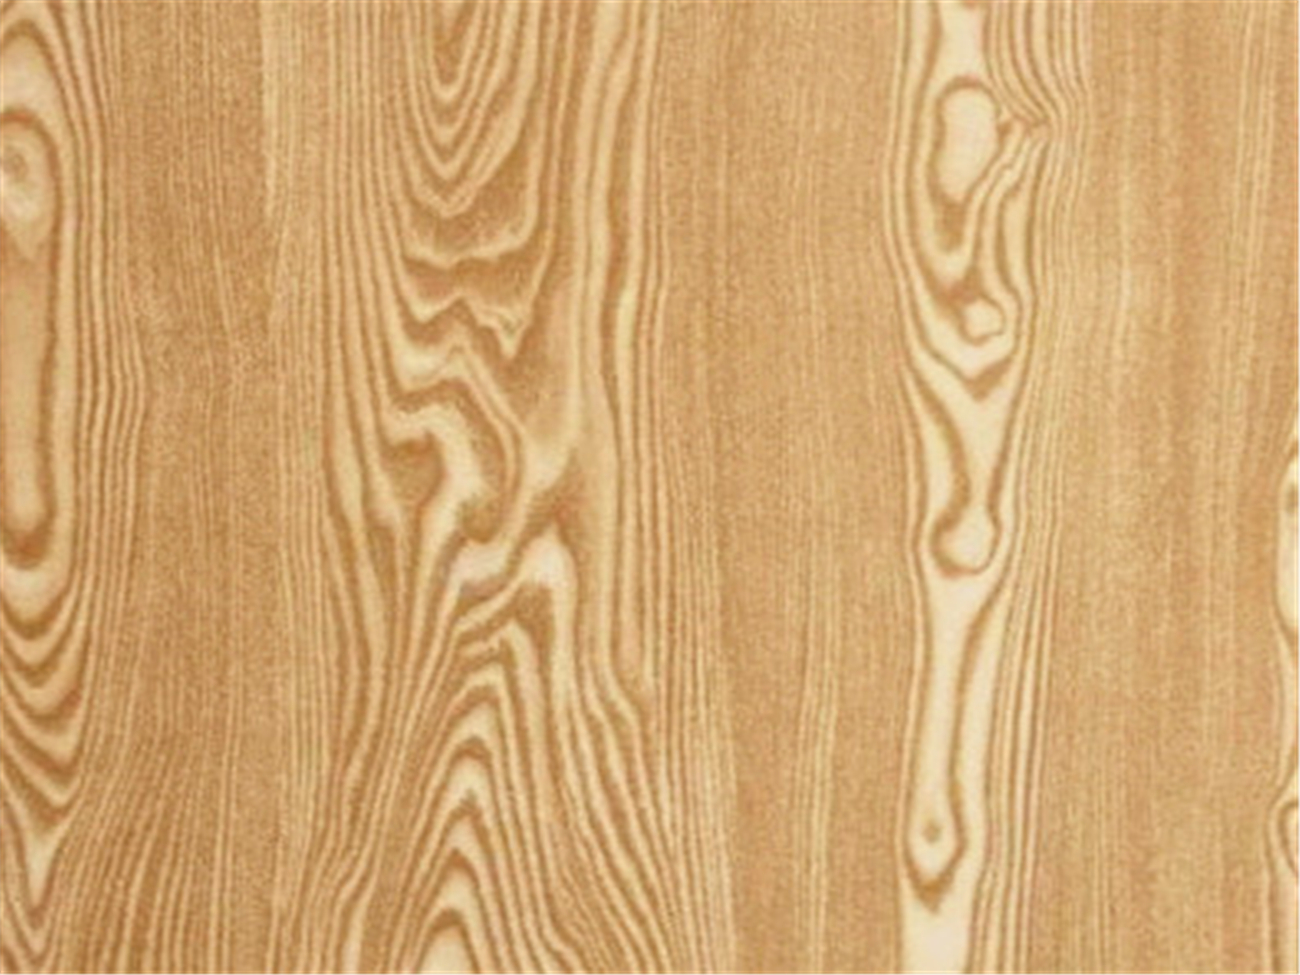 科技木水曲柳贴面板 贴面密度板 贴面多层板 饰面-阿里巴巴